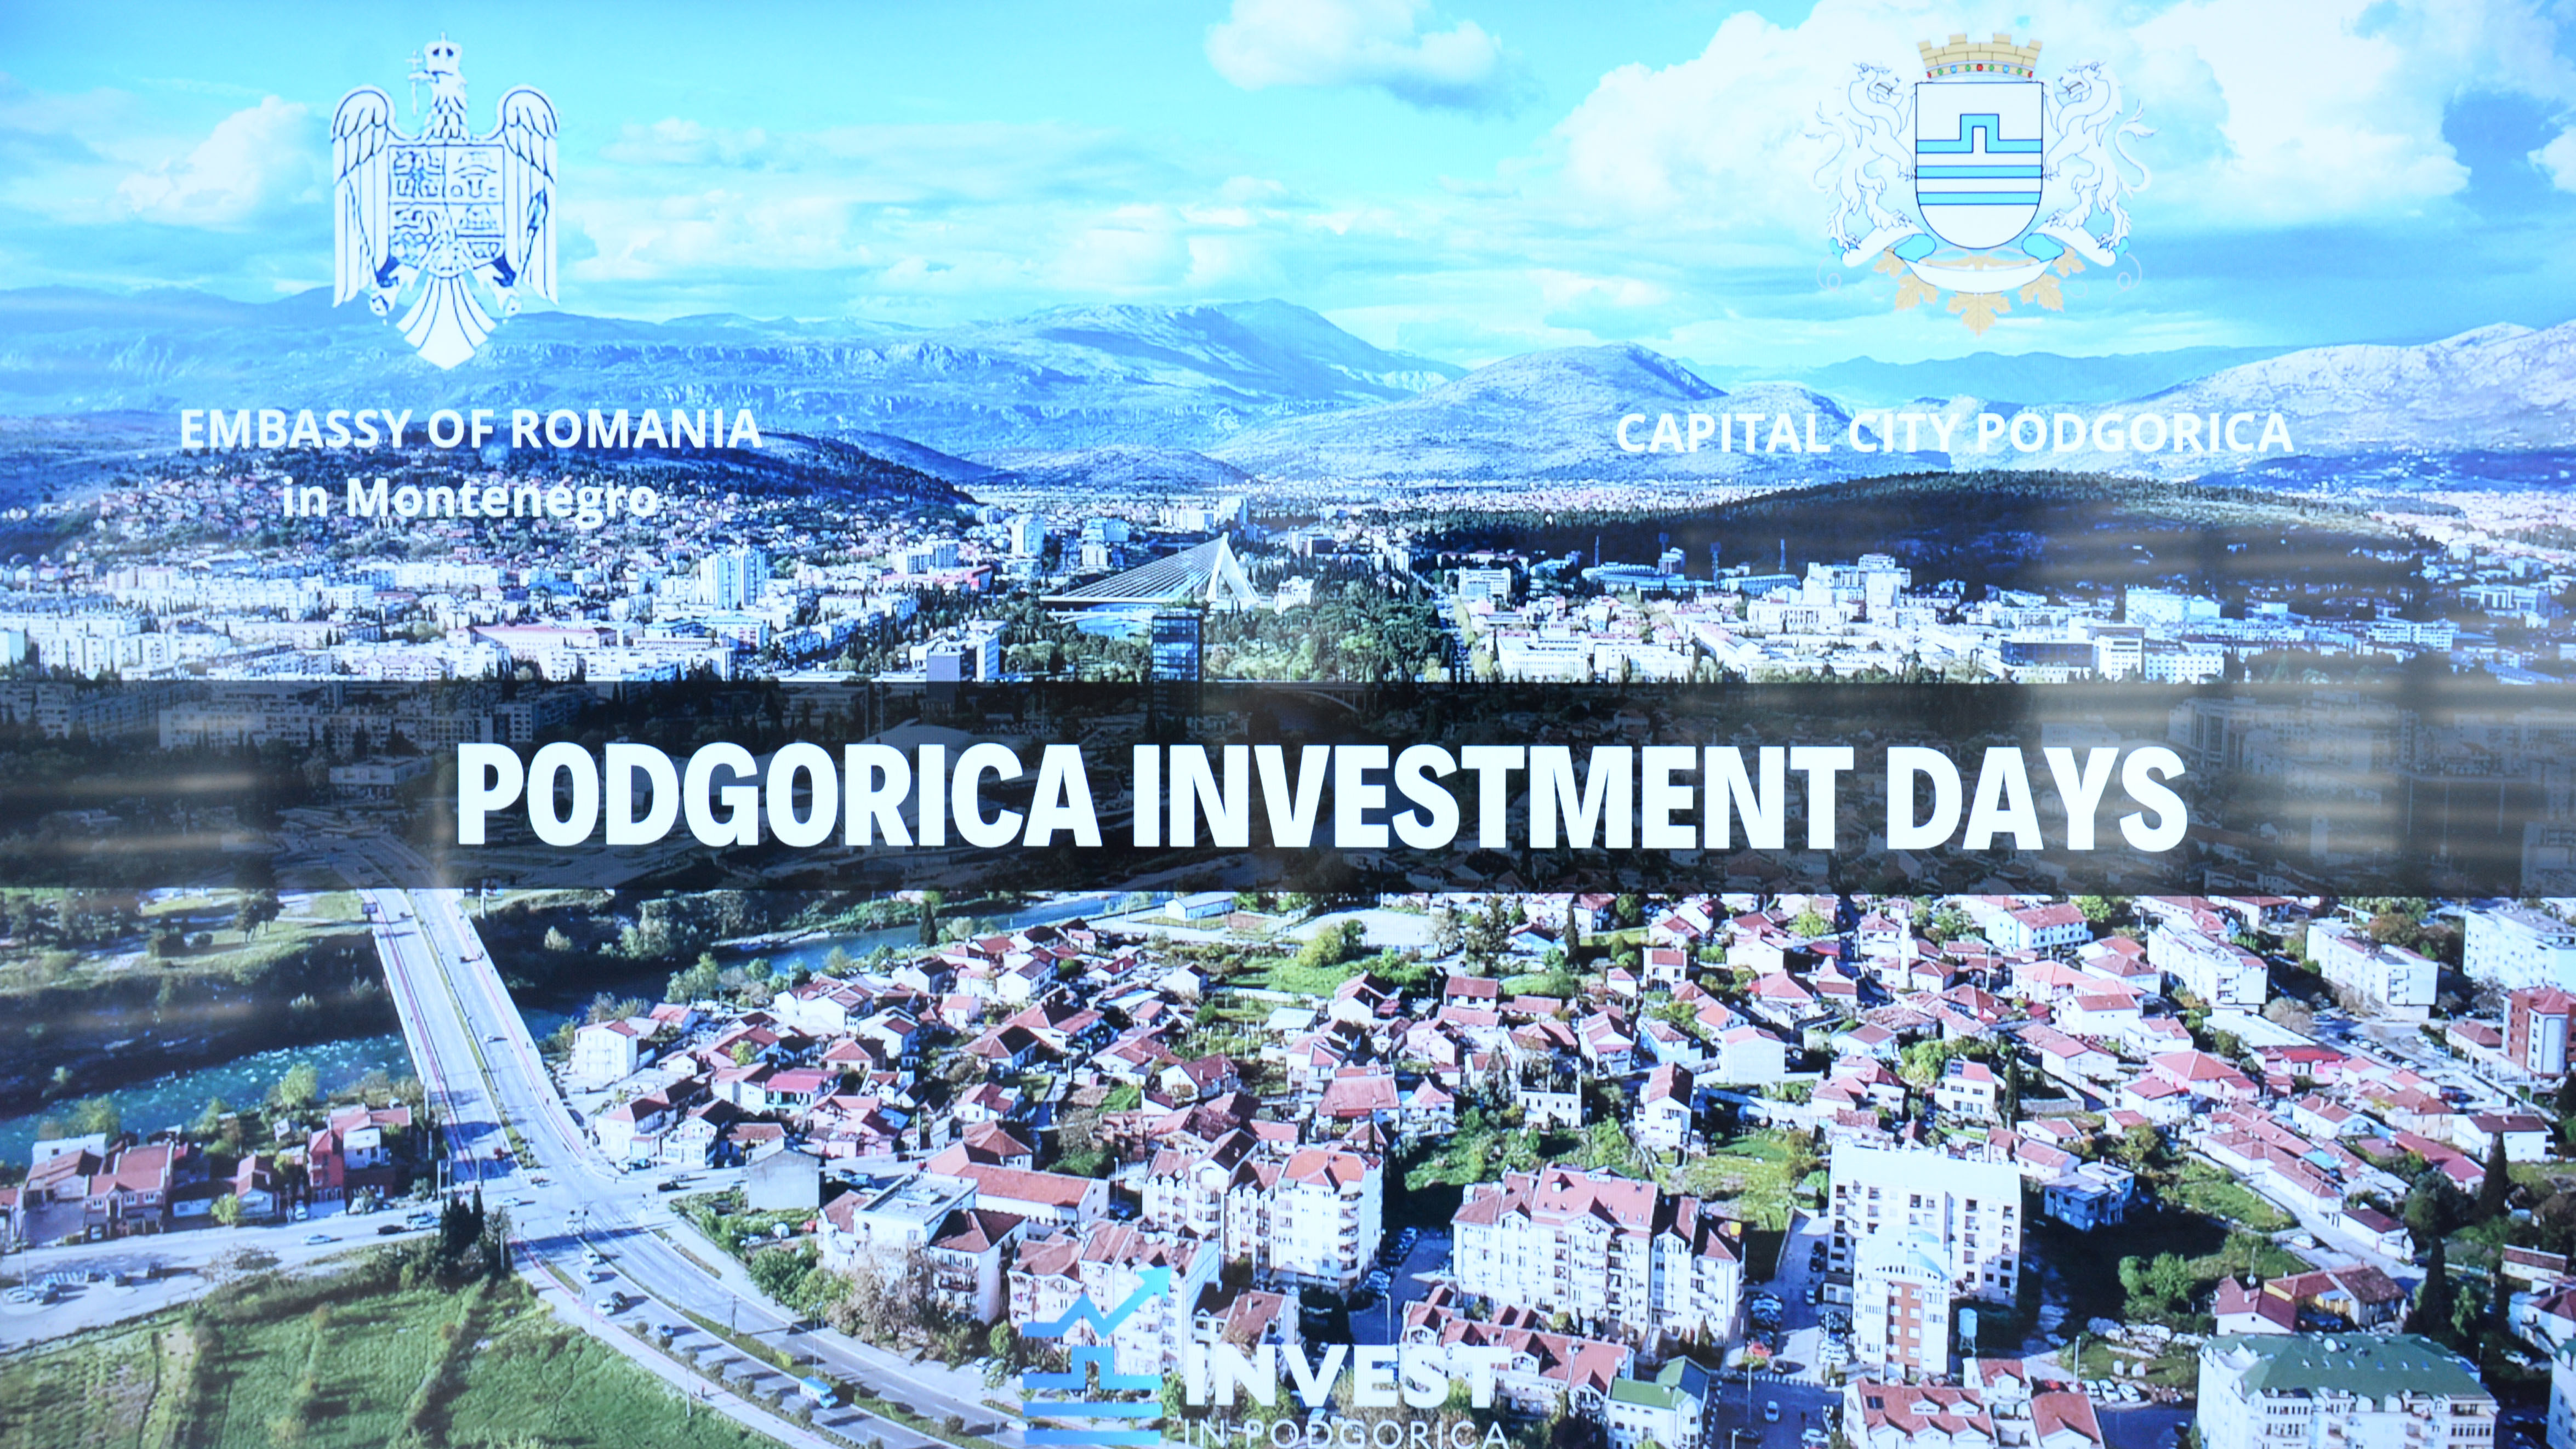 Investicioni potencijali predstavljeni rumunskim privrednicima